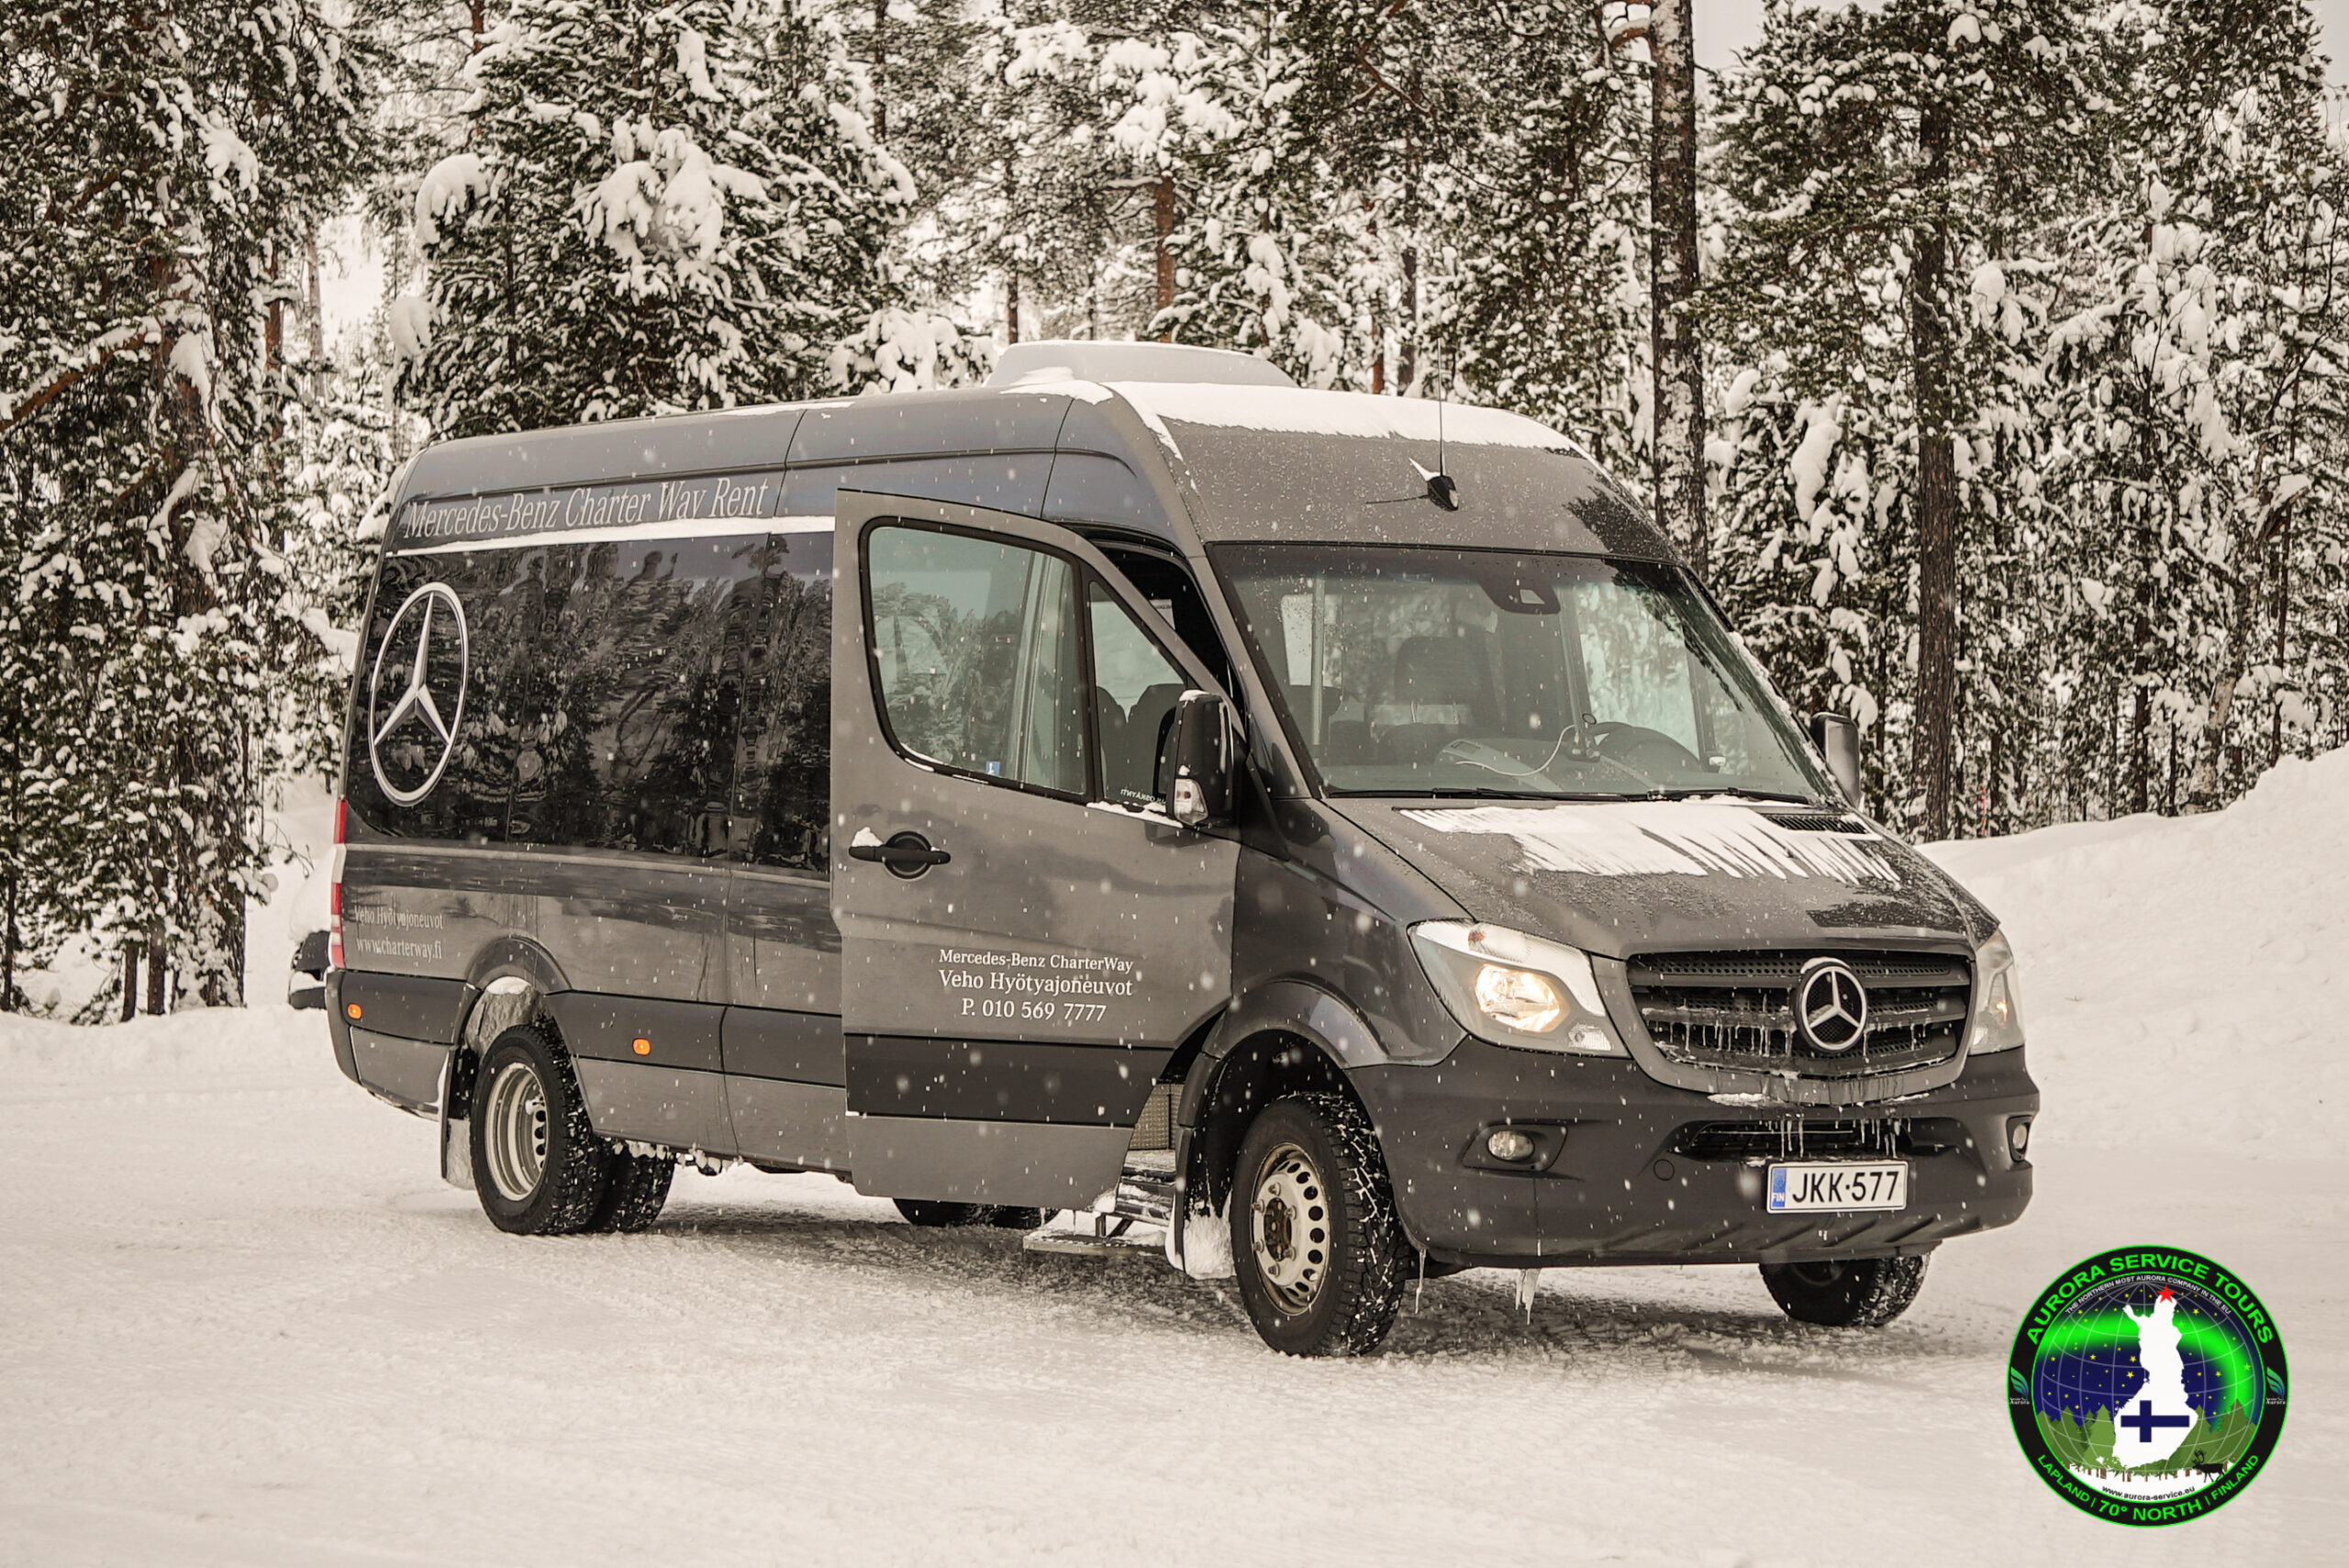 Bus transfer service to Utsjoki, Lapland